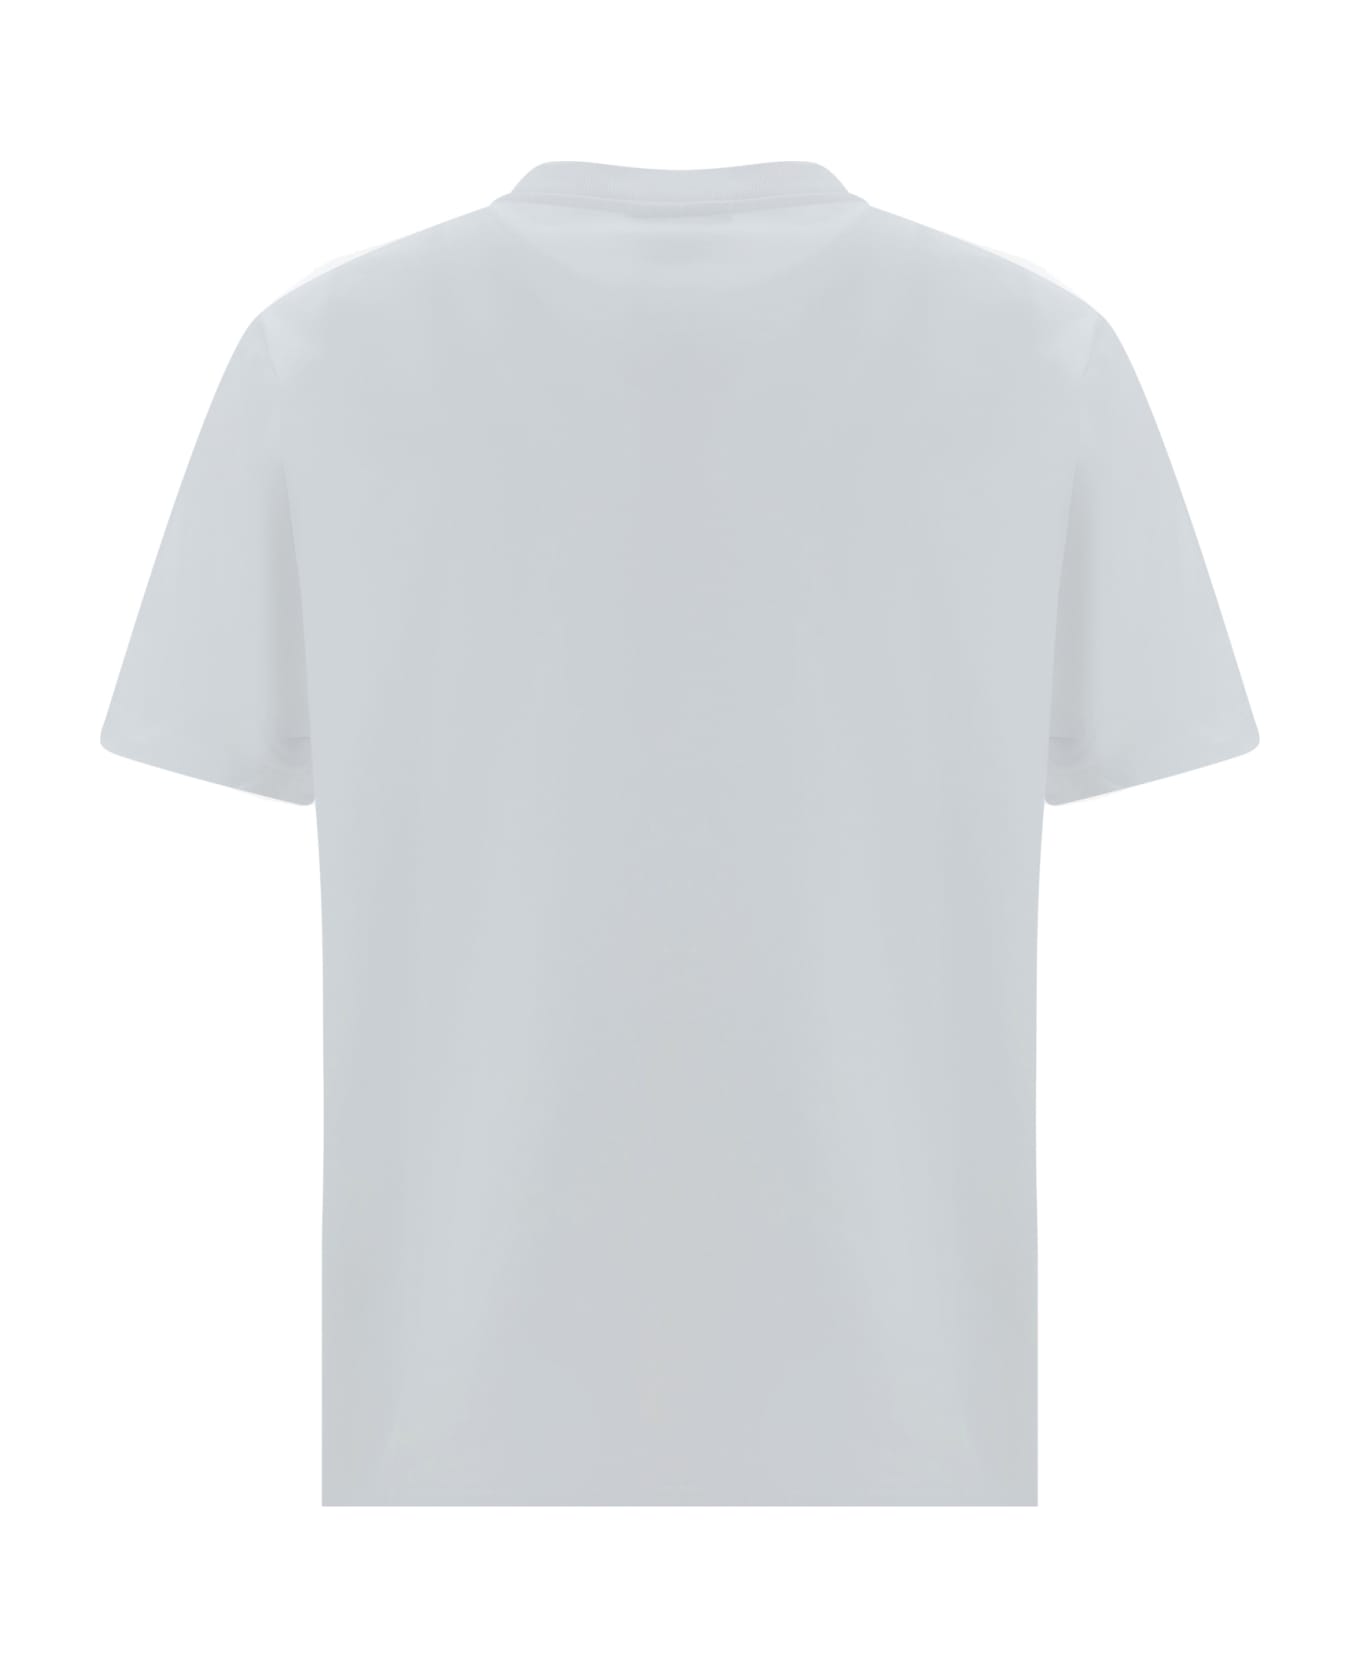 Maison Kitsuné T-shirt - White/black